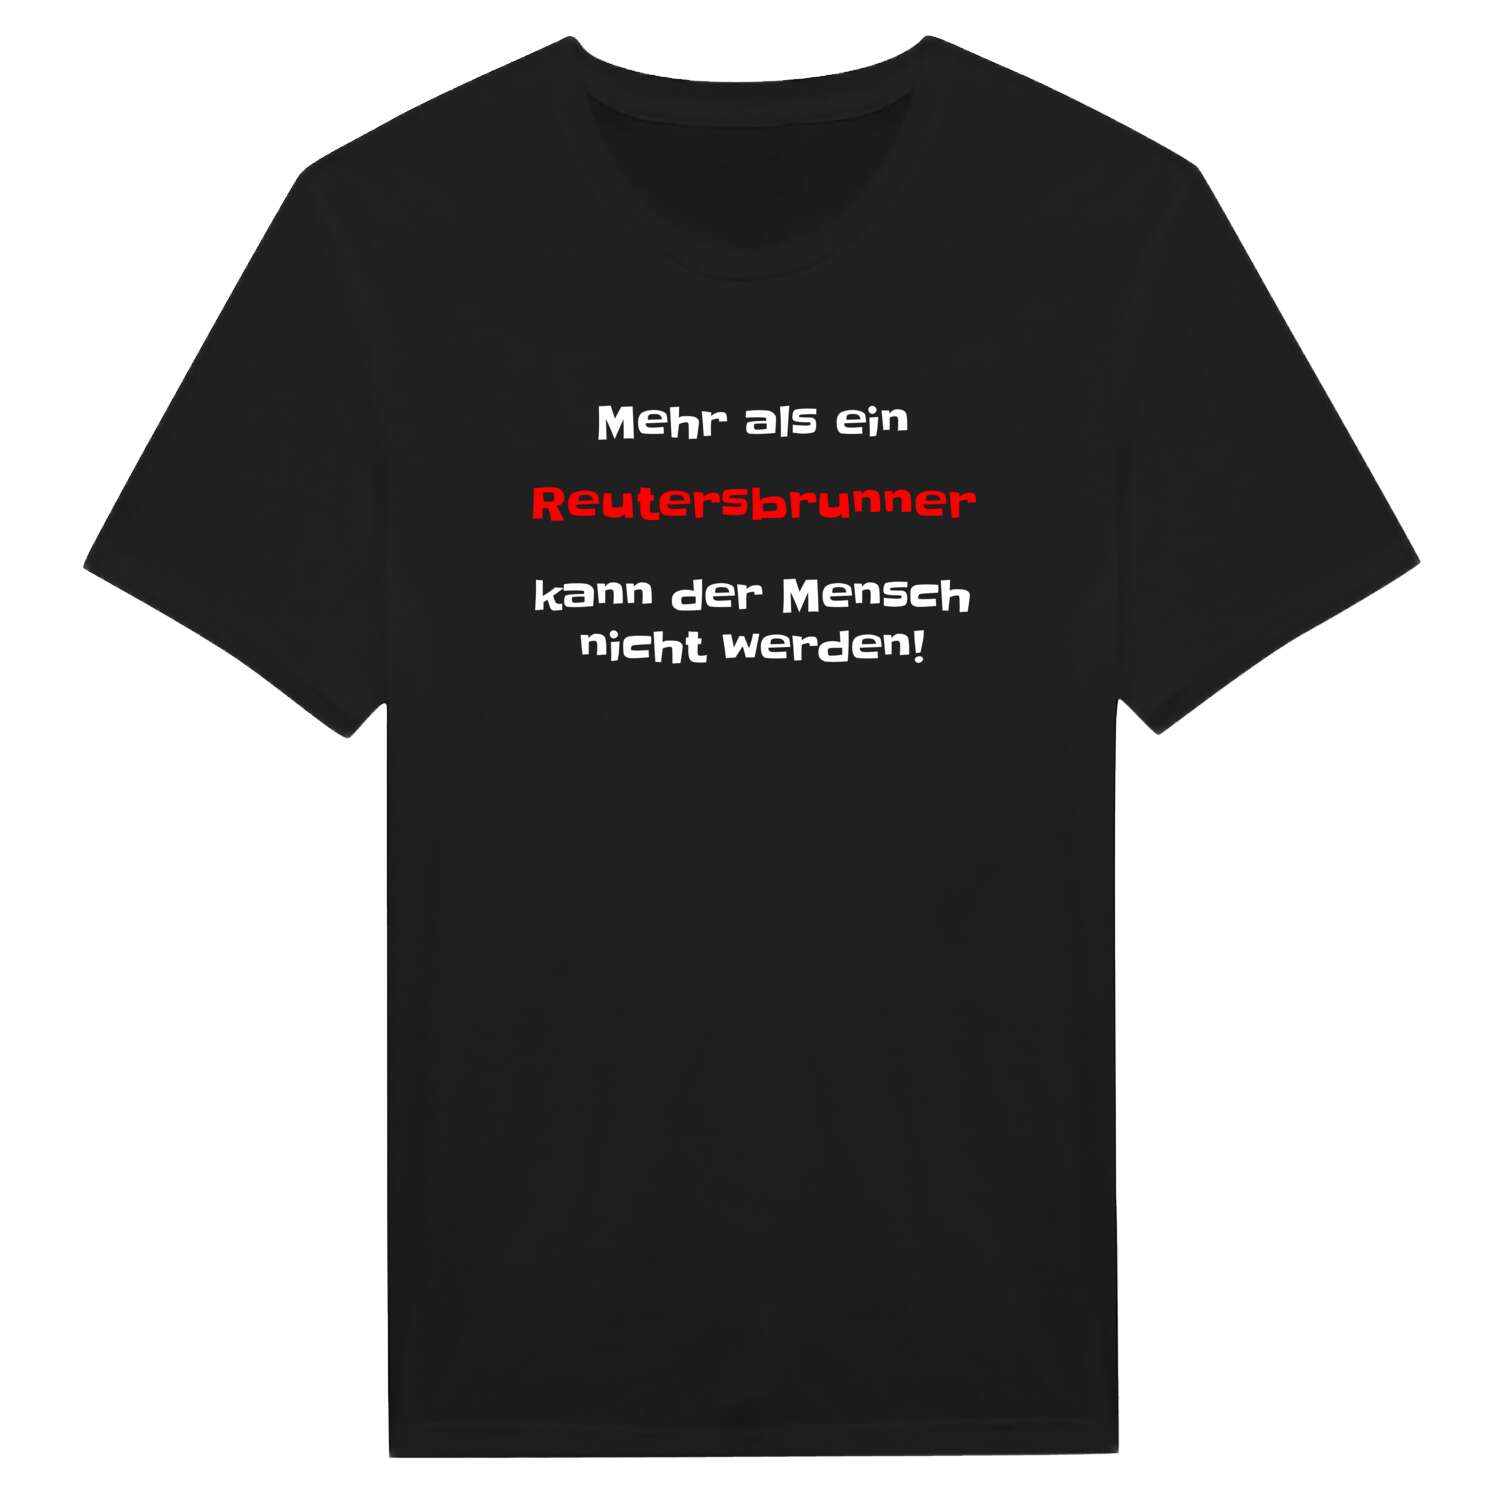 Reutersbrunn T-Shirt »Mehr als ein«